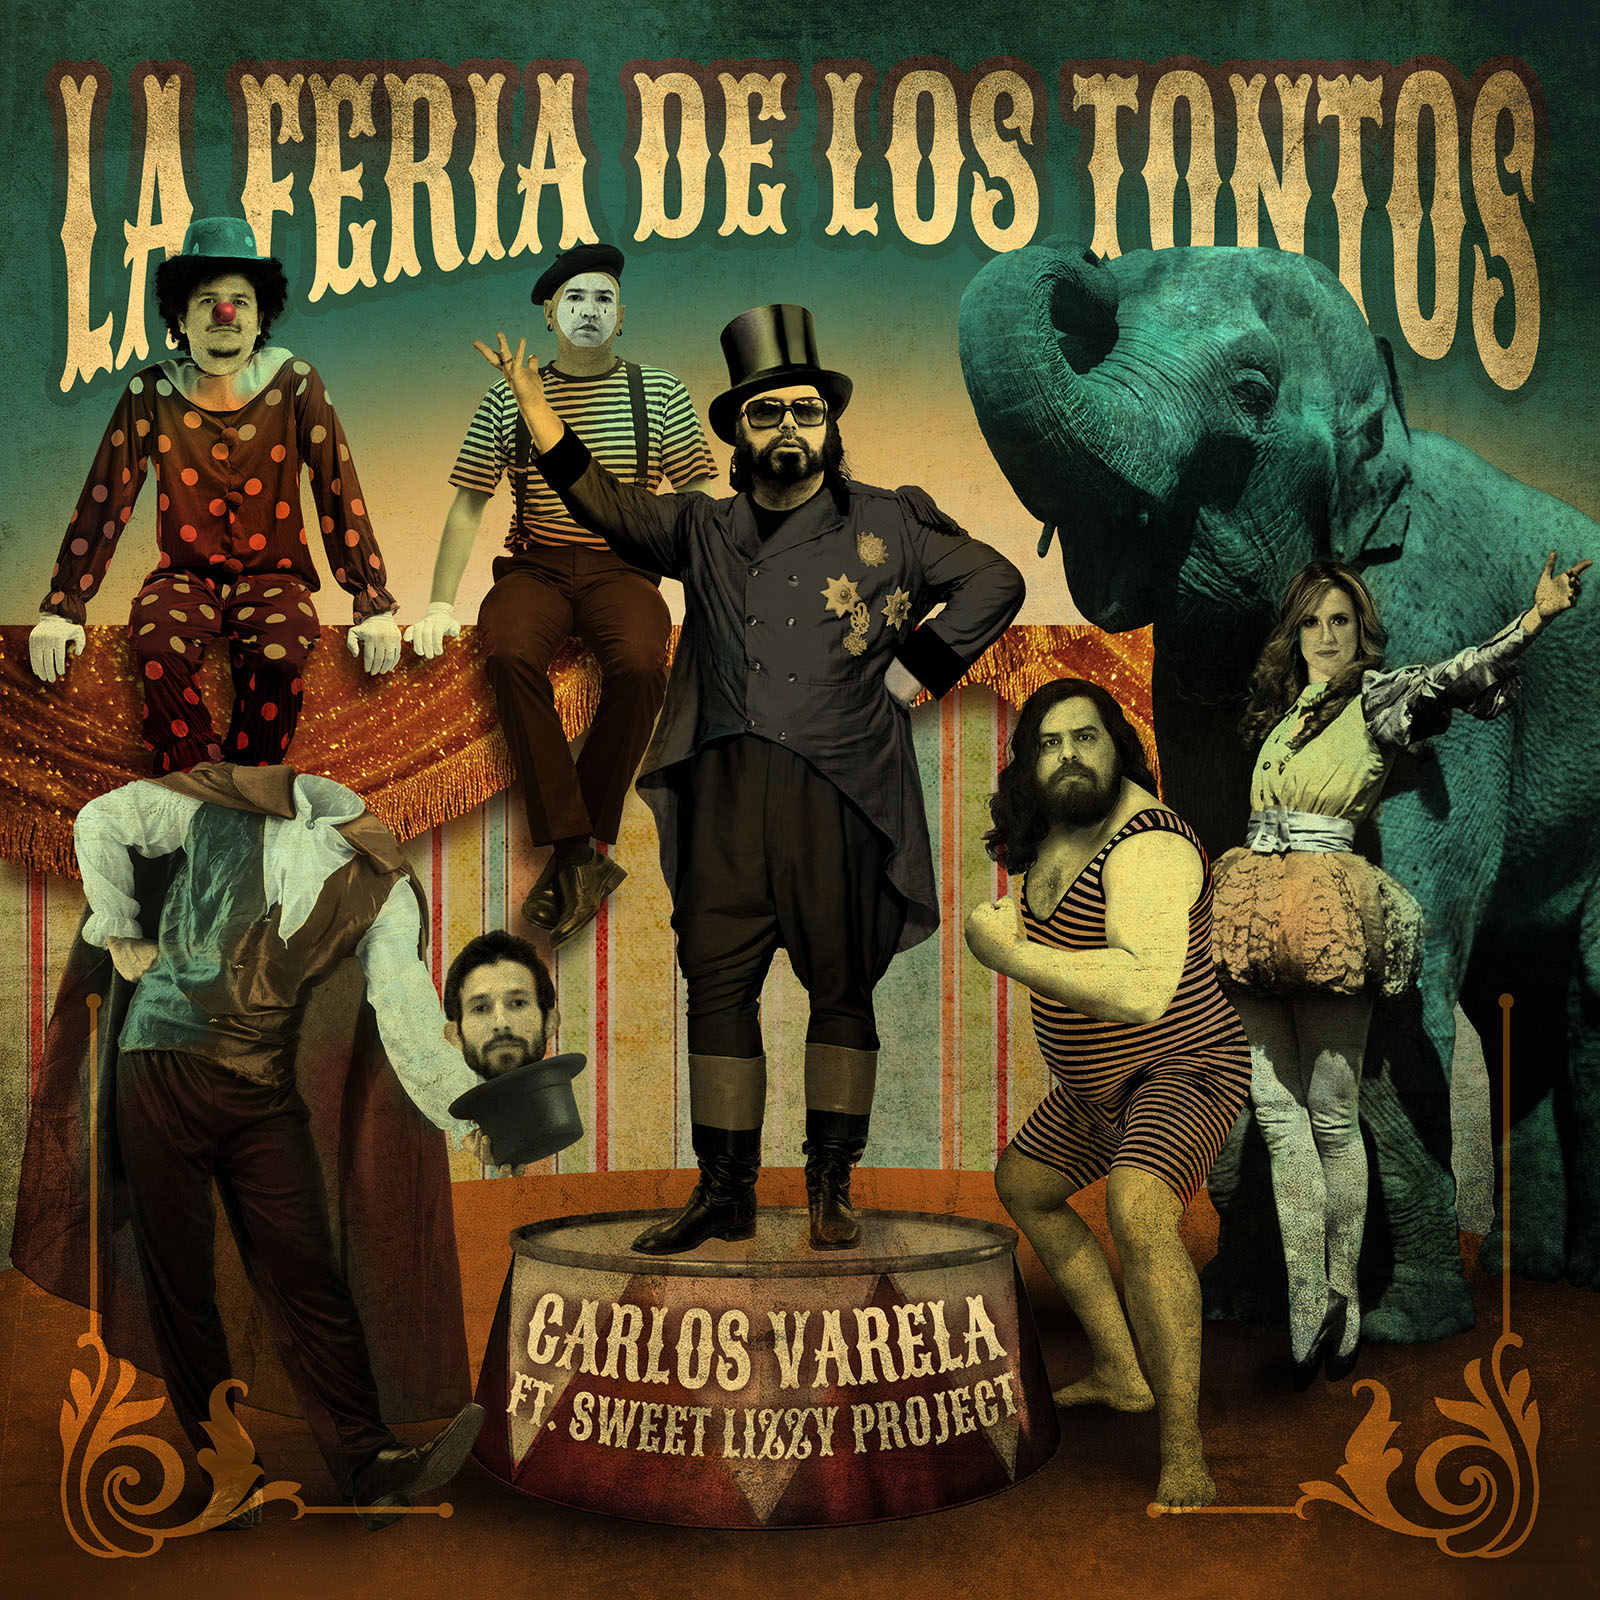 La Feria de los Tontos | Carlos Varela ft. Sweet Lizzy Project | CD Cover by Karoll William Visual Arts